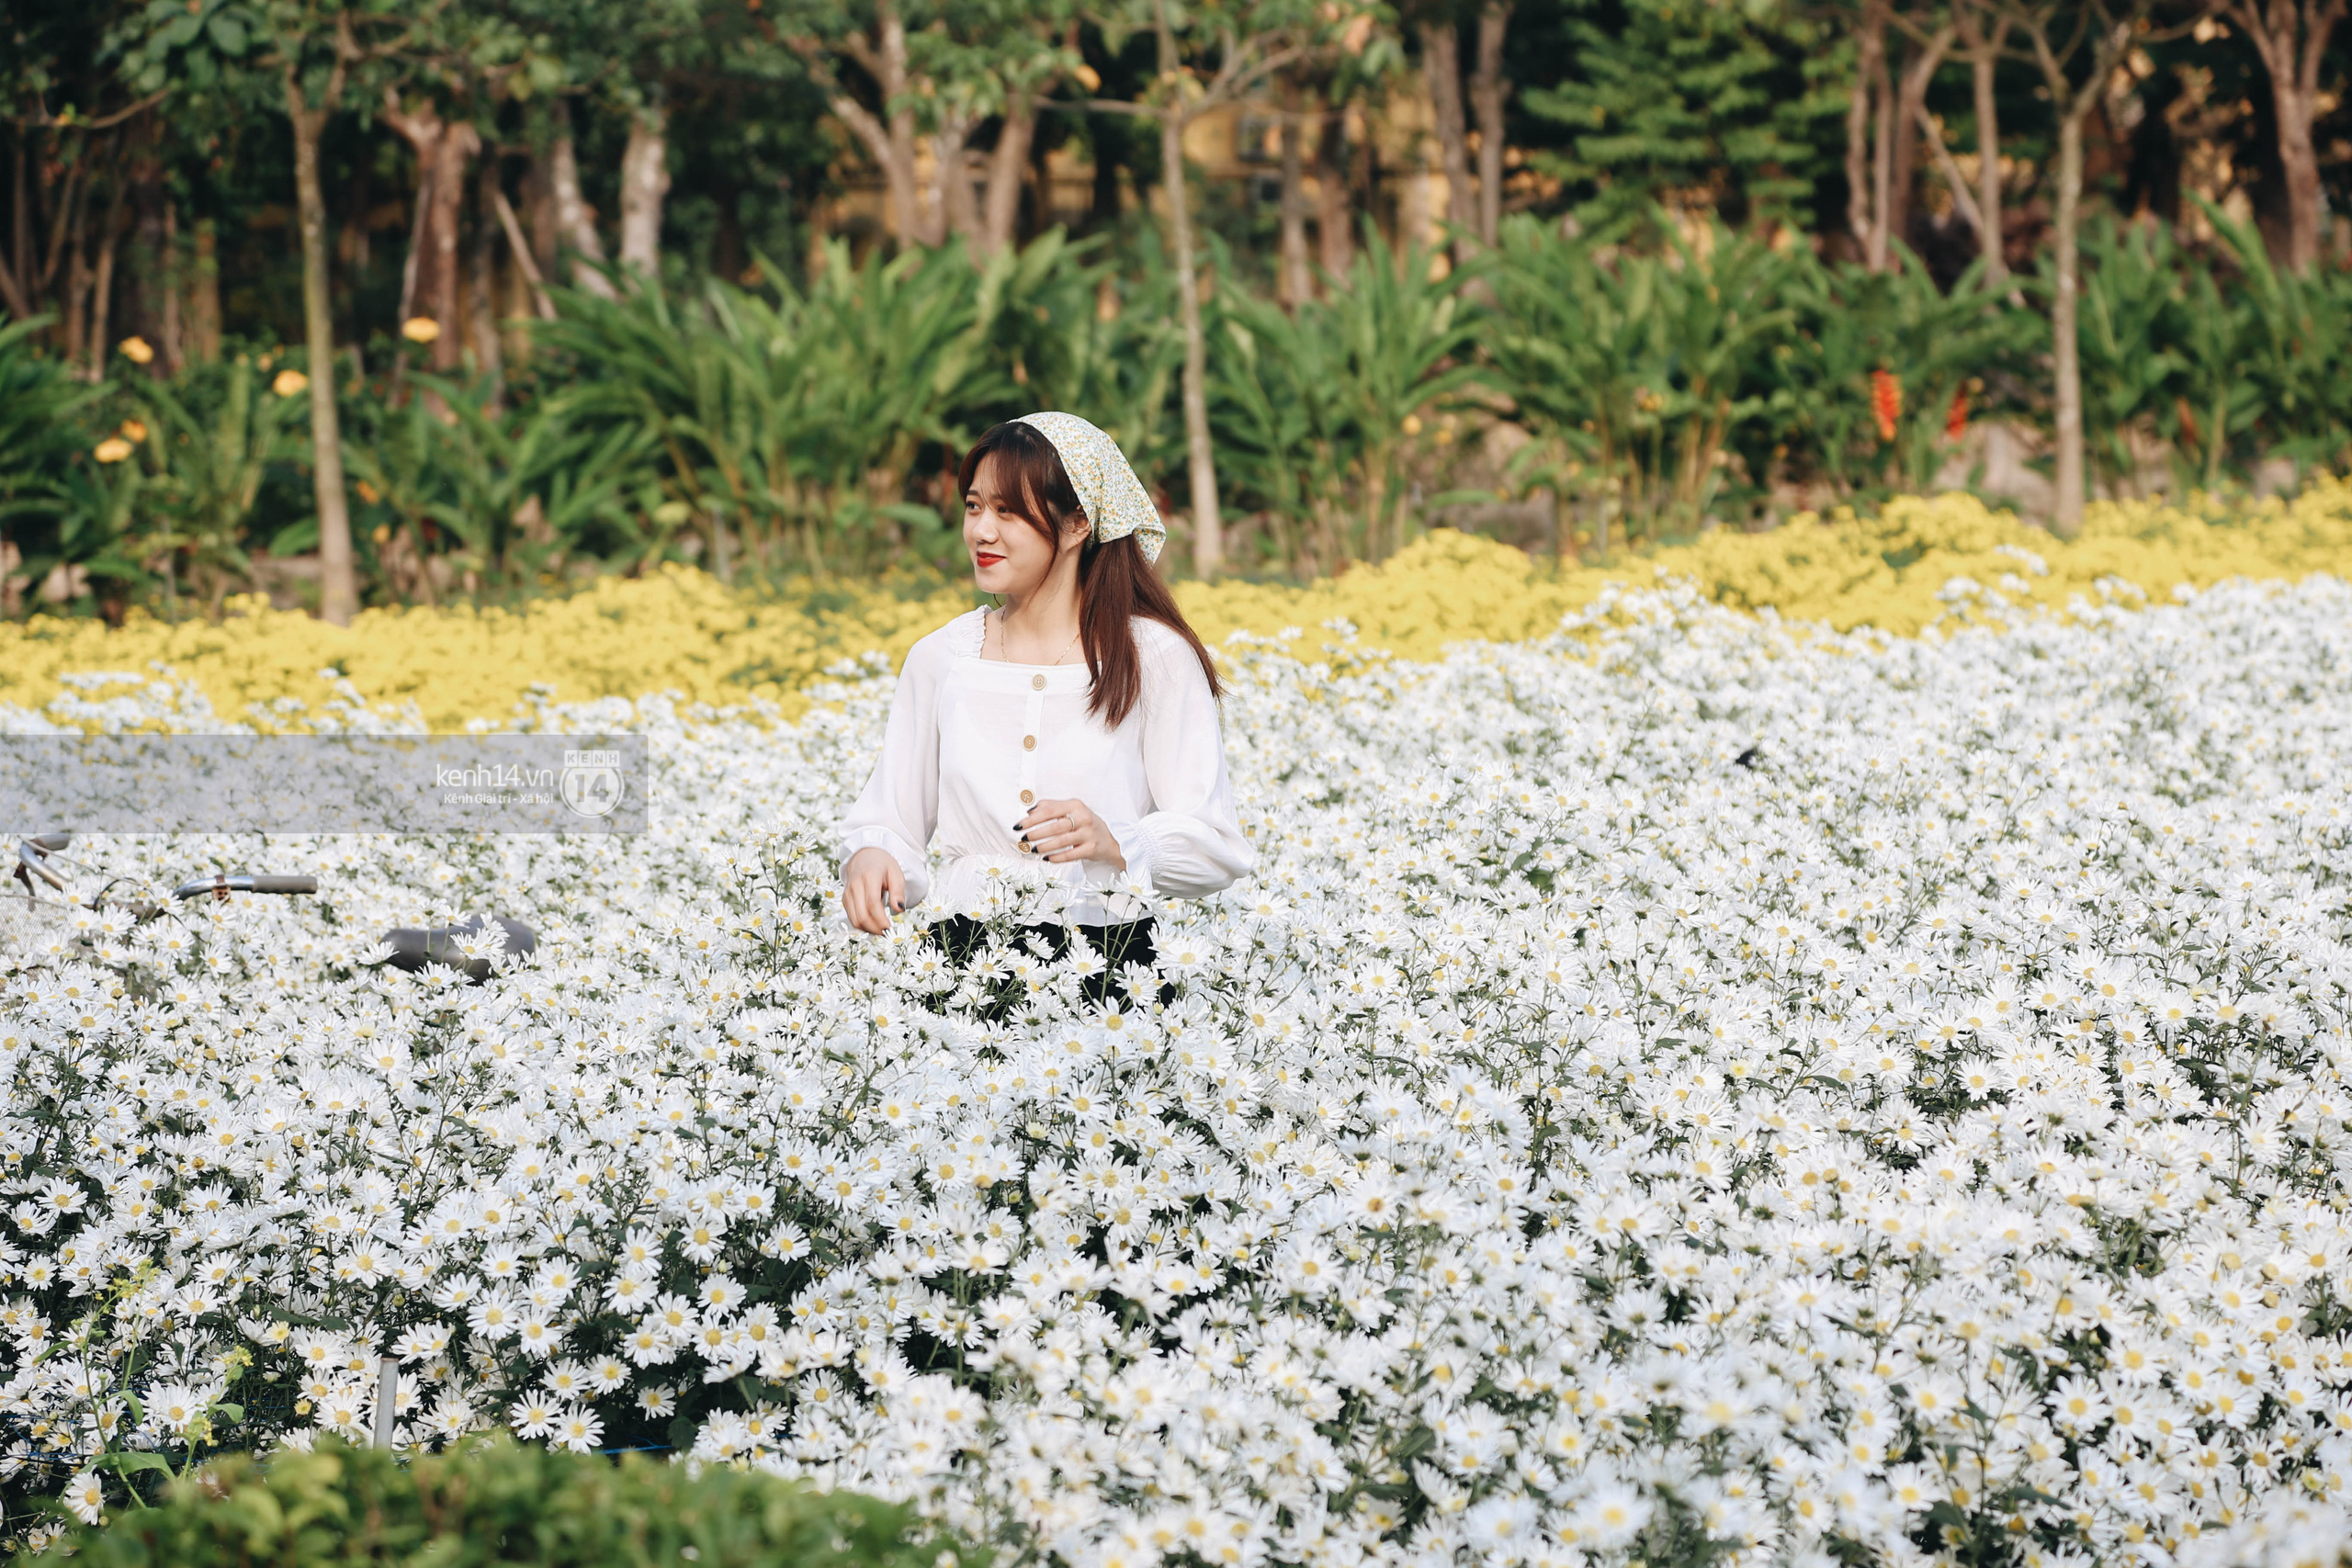 Trường ĐH rộng gần 200ha có vườn hoa đẹp nhất mùa đông Hà Nội, nhiều góc sống ảo cực chill chỉ với 25K - Ảnh 2.